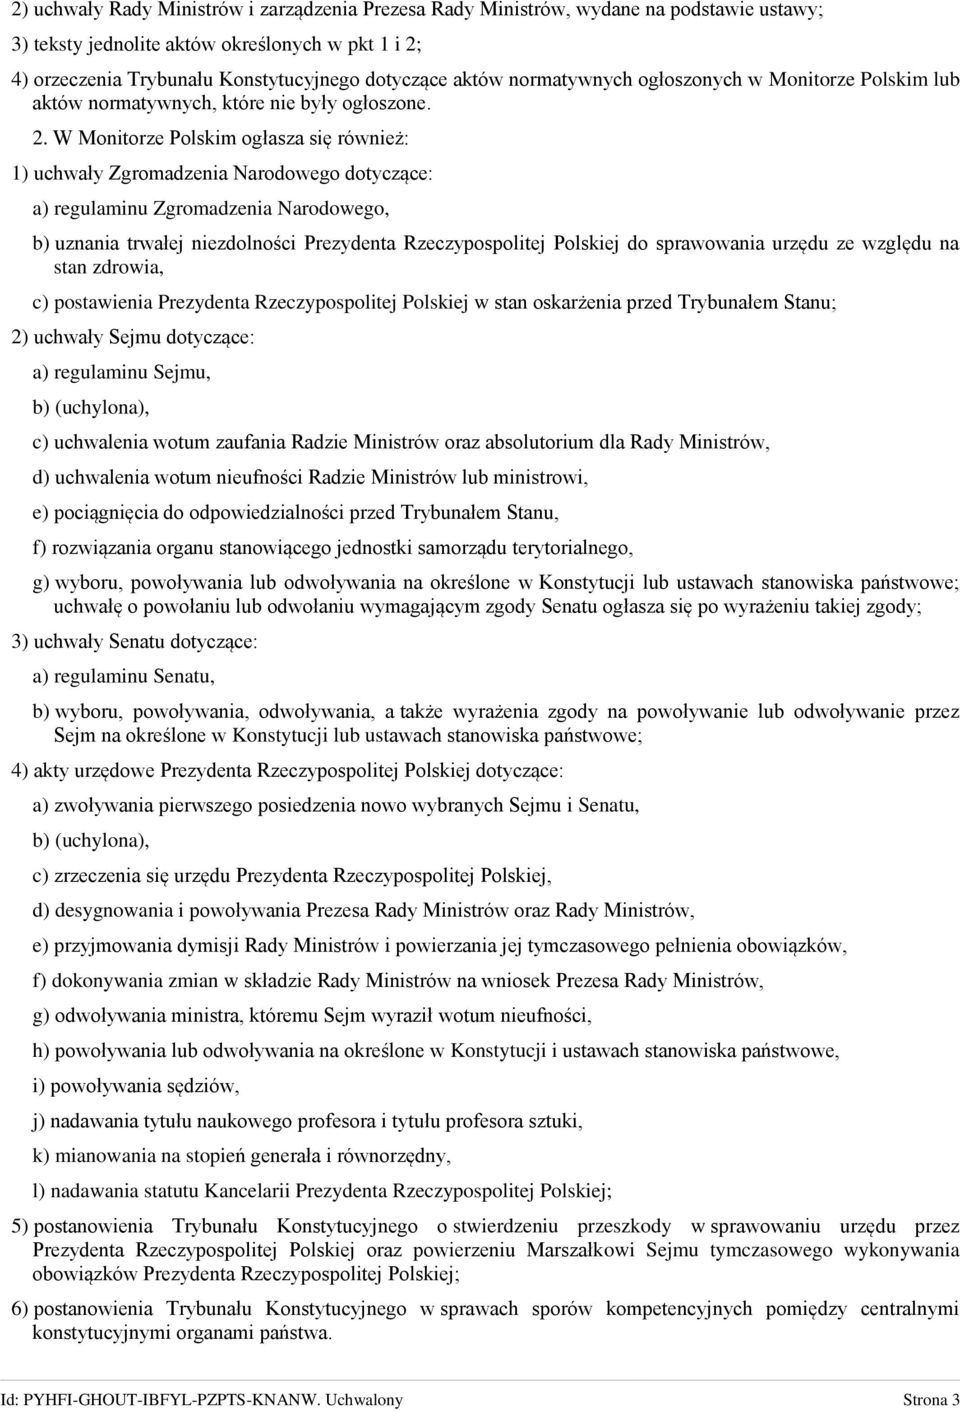 W Monitorze Polskim ogłasza się również: 1) uchwały Zgromadzenia Narodowego dotyczące: a) regulaminu Zgromadzenia Narodowego, b) uznania trwałej niezdolności Prezydenta Rzeczypospolitej Polskiej do